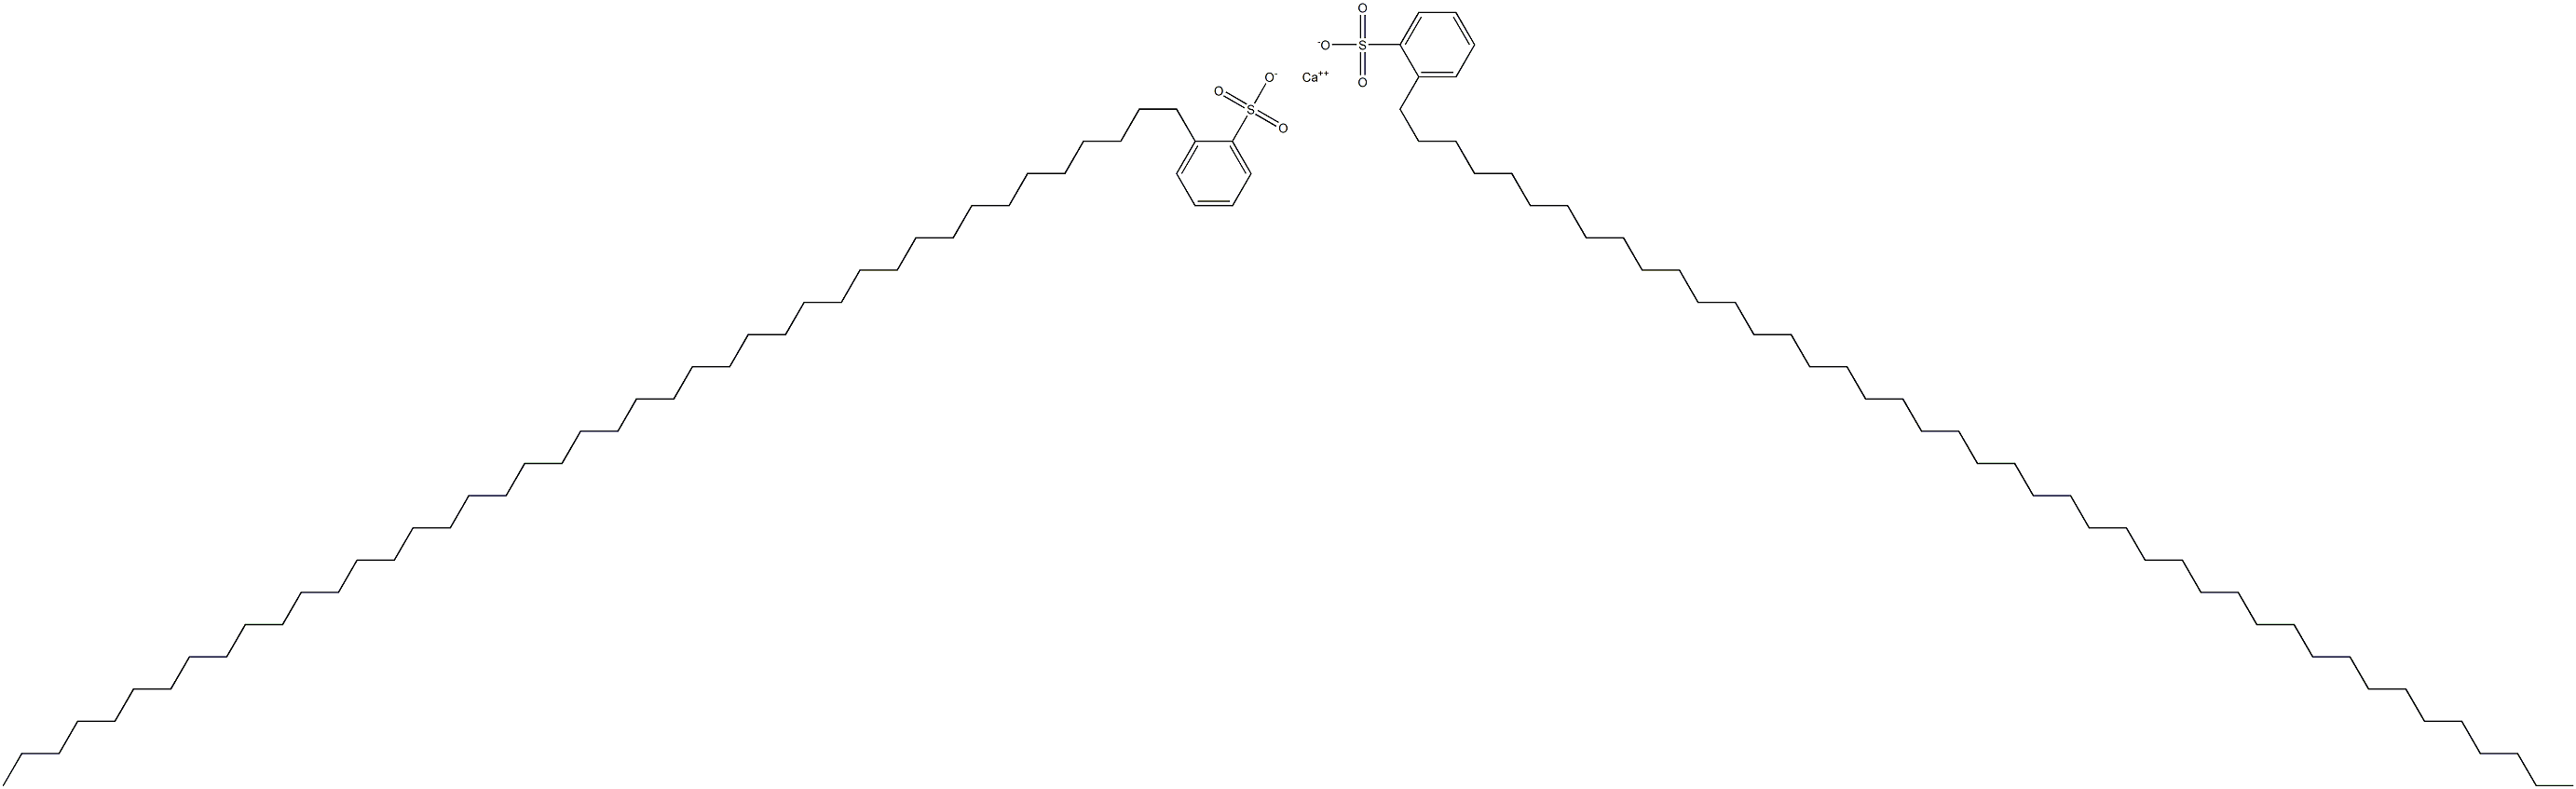 Bis[2-(tritetracontan-1-yl)benzenesulfonic acid]calcium salt|